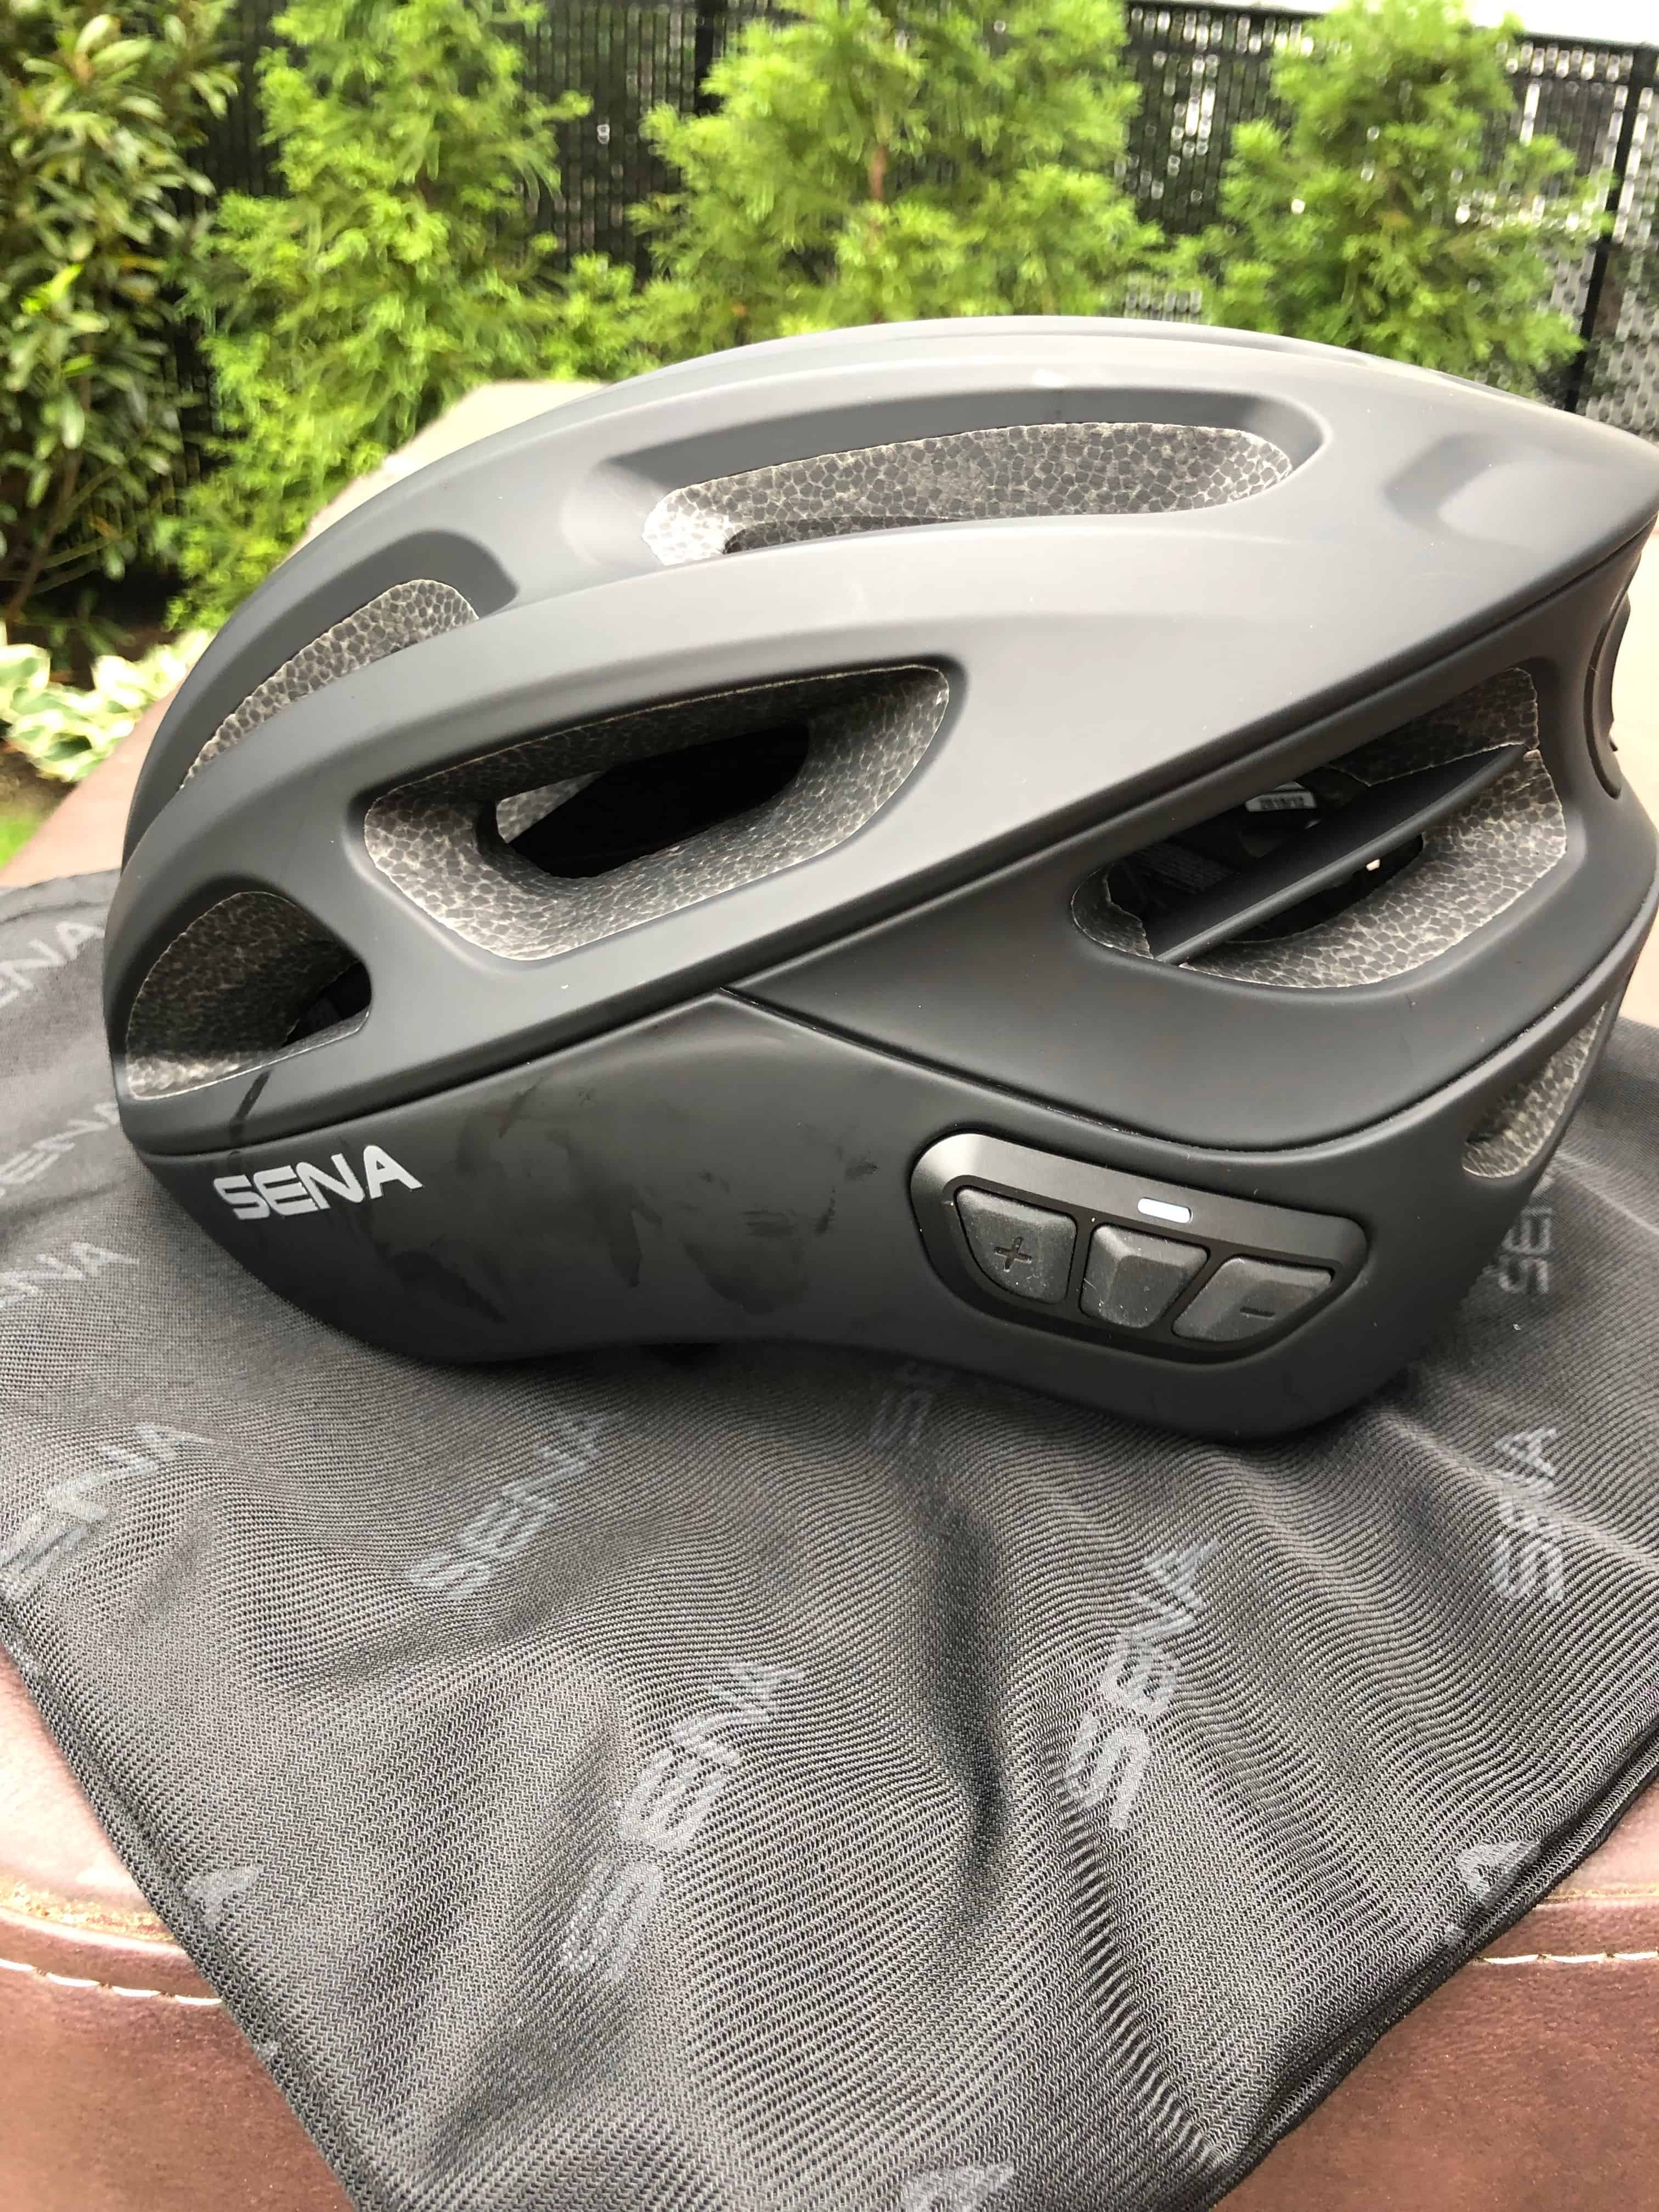 sena smart cycling helmet